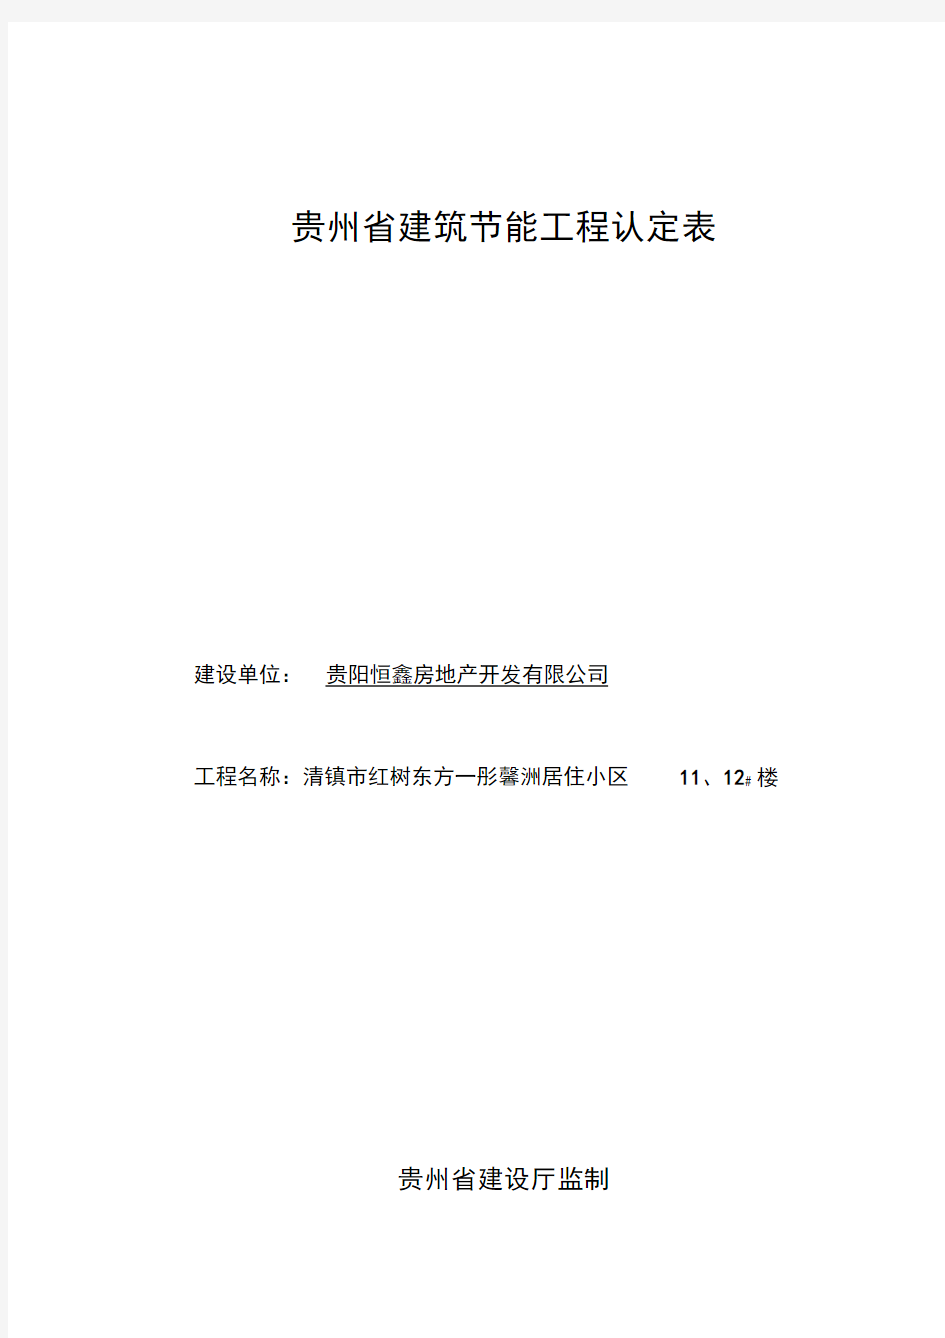 贵州省建筑节能工程认定表(11、12#楼)